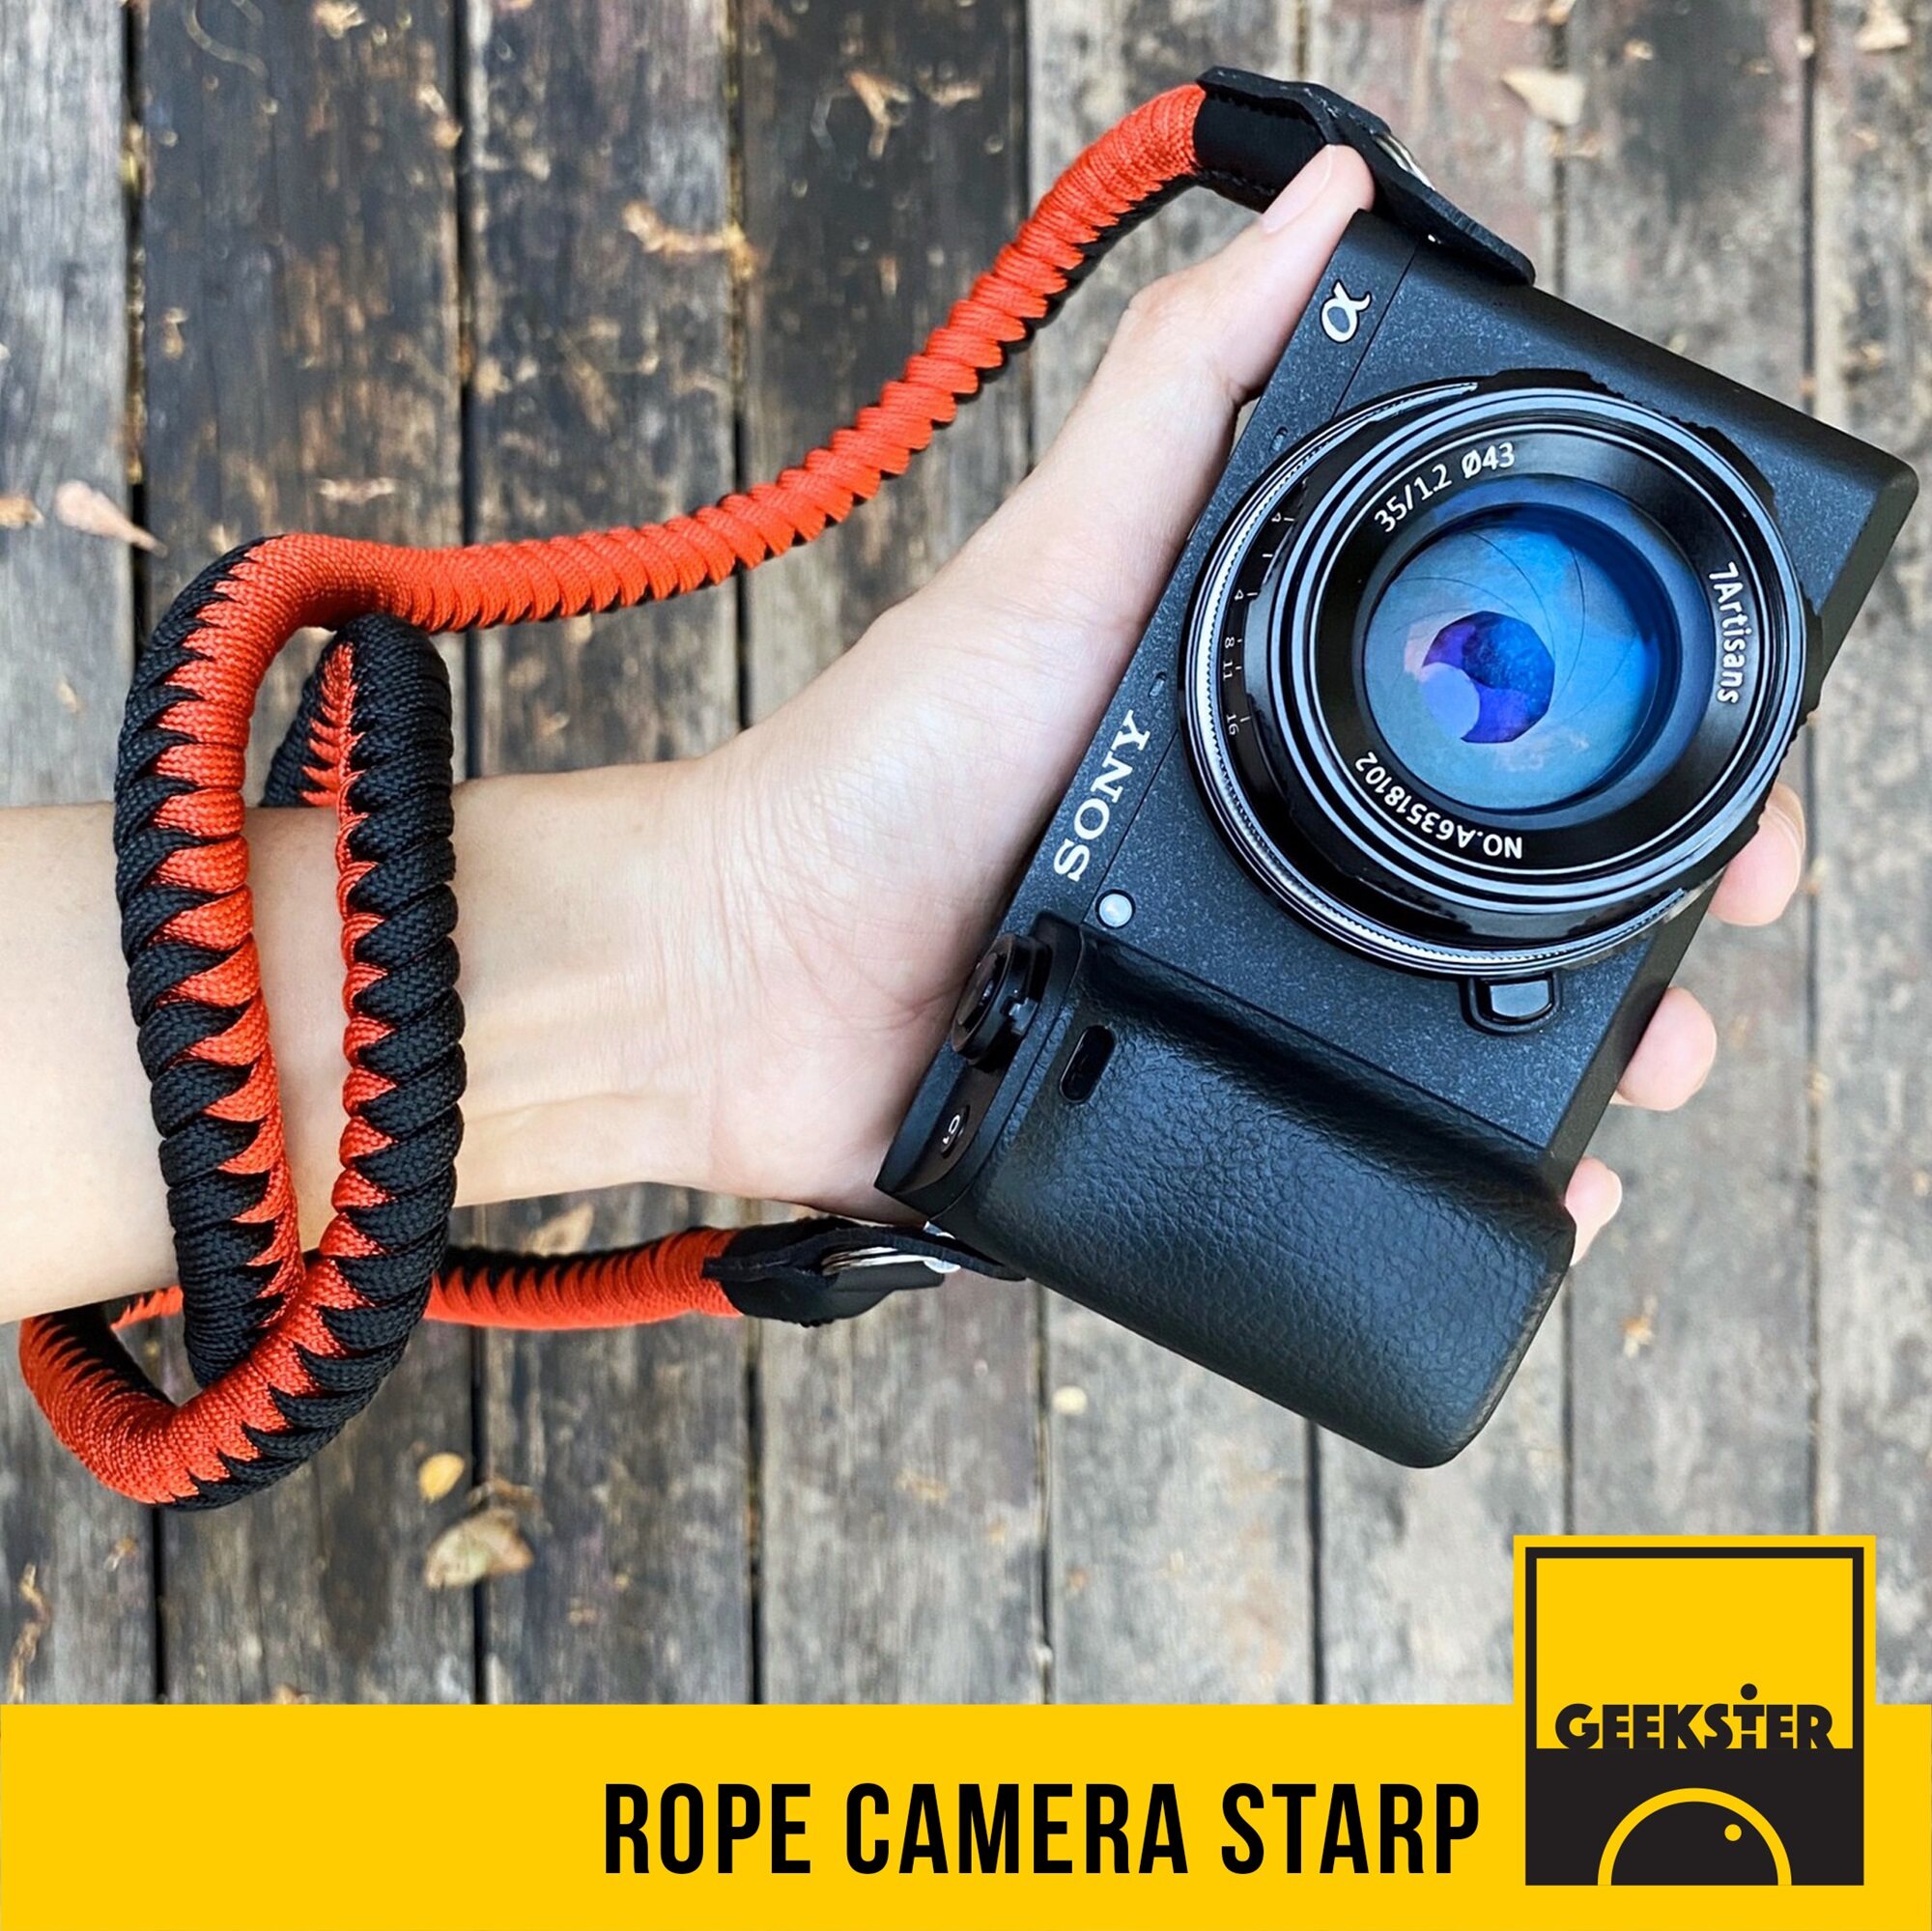 สายคล้องกล้อง เชือกถัก แบบห่วง คล้องคอ แดง ดำ ( Rope Camera Strap สายคล้อง สาย กล้อง คล้อง คอ เชือก ถัก ) ( Geekster )